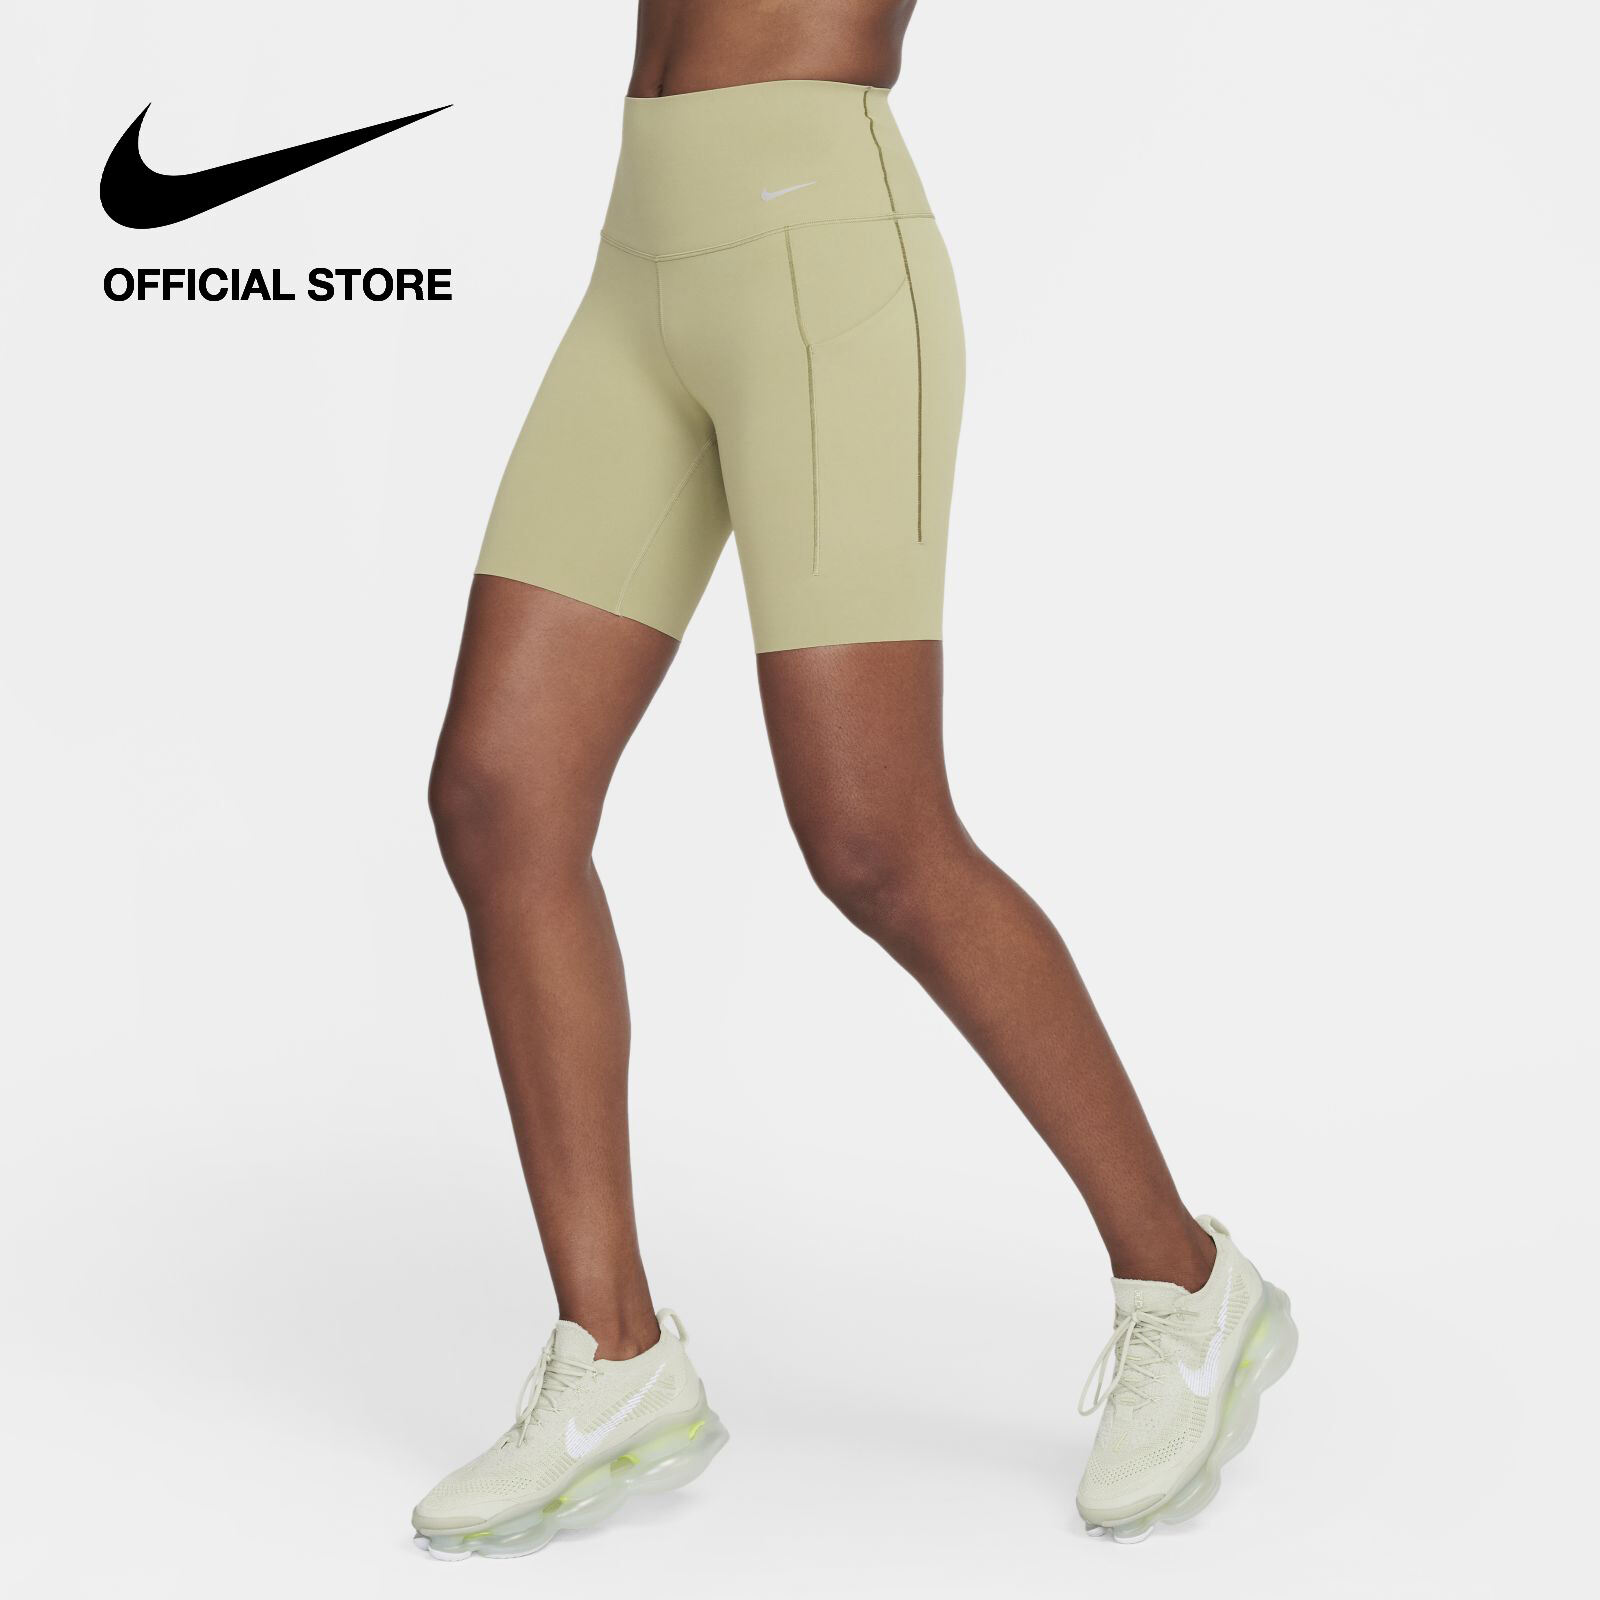 Nike Celana Latihan Ketat Wanita Dri-FIT Yoga High-Rise 7/8 - Hitam [DM7024- 010]